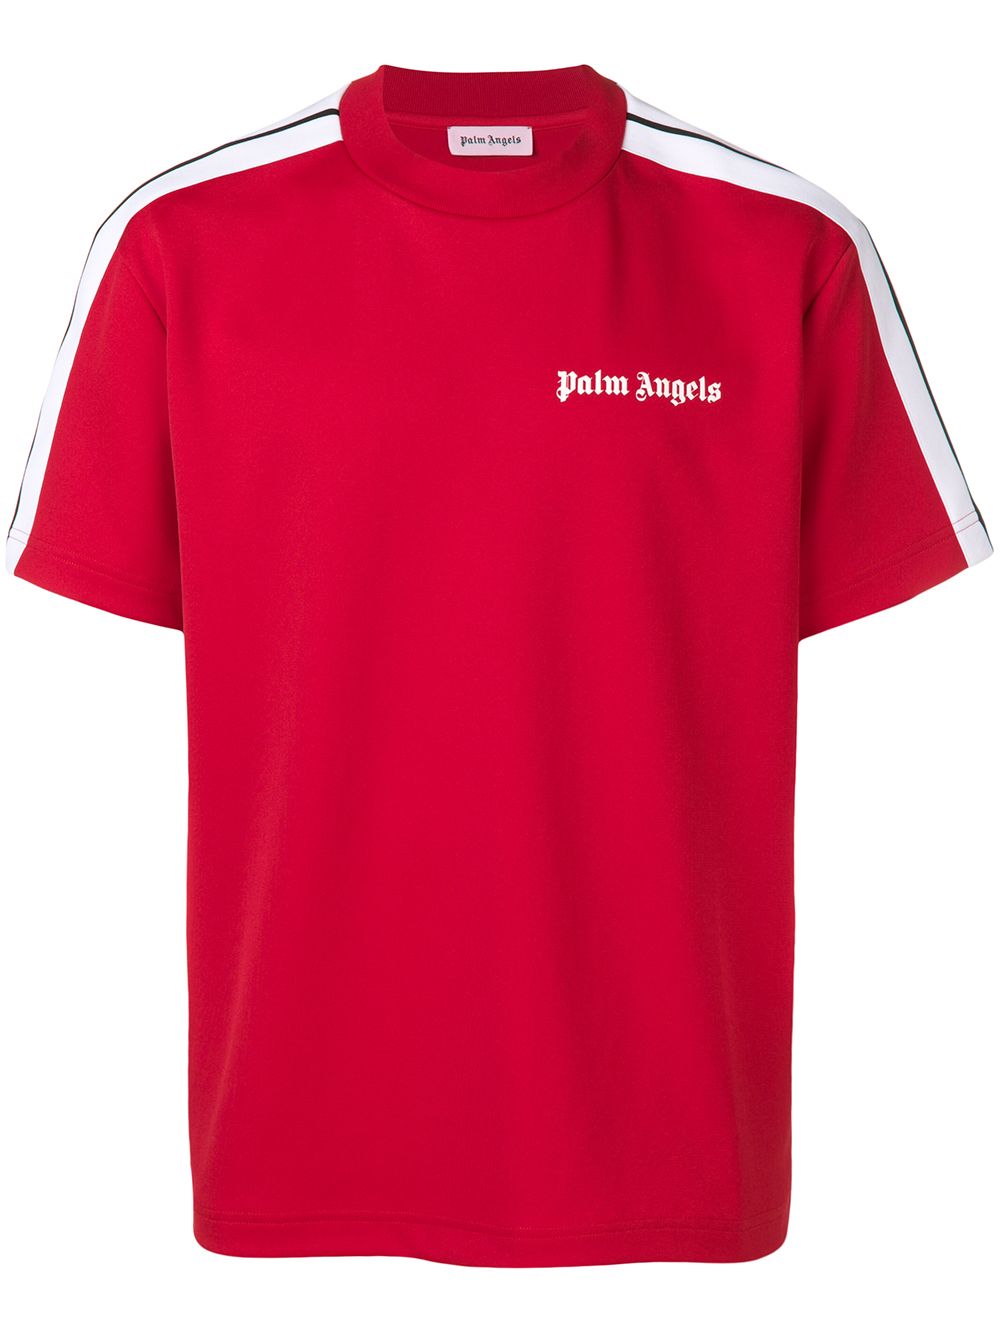 фото Palm Angels футболка с полосками по бокам и логотипом